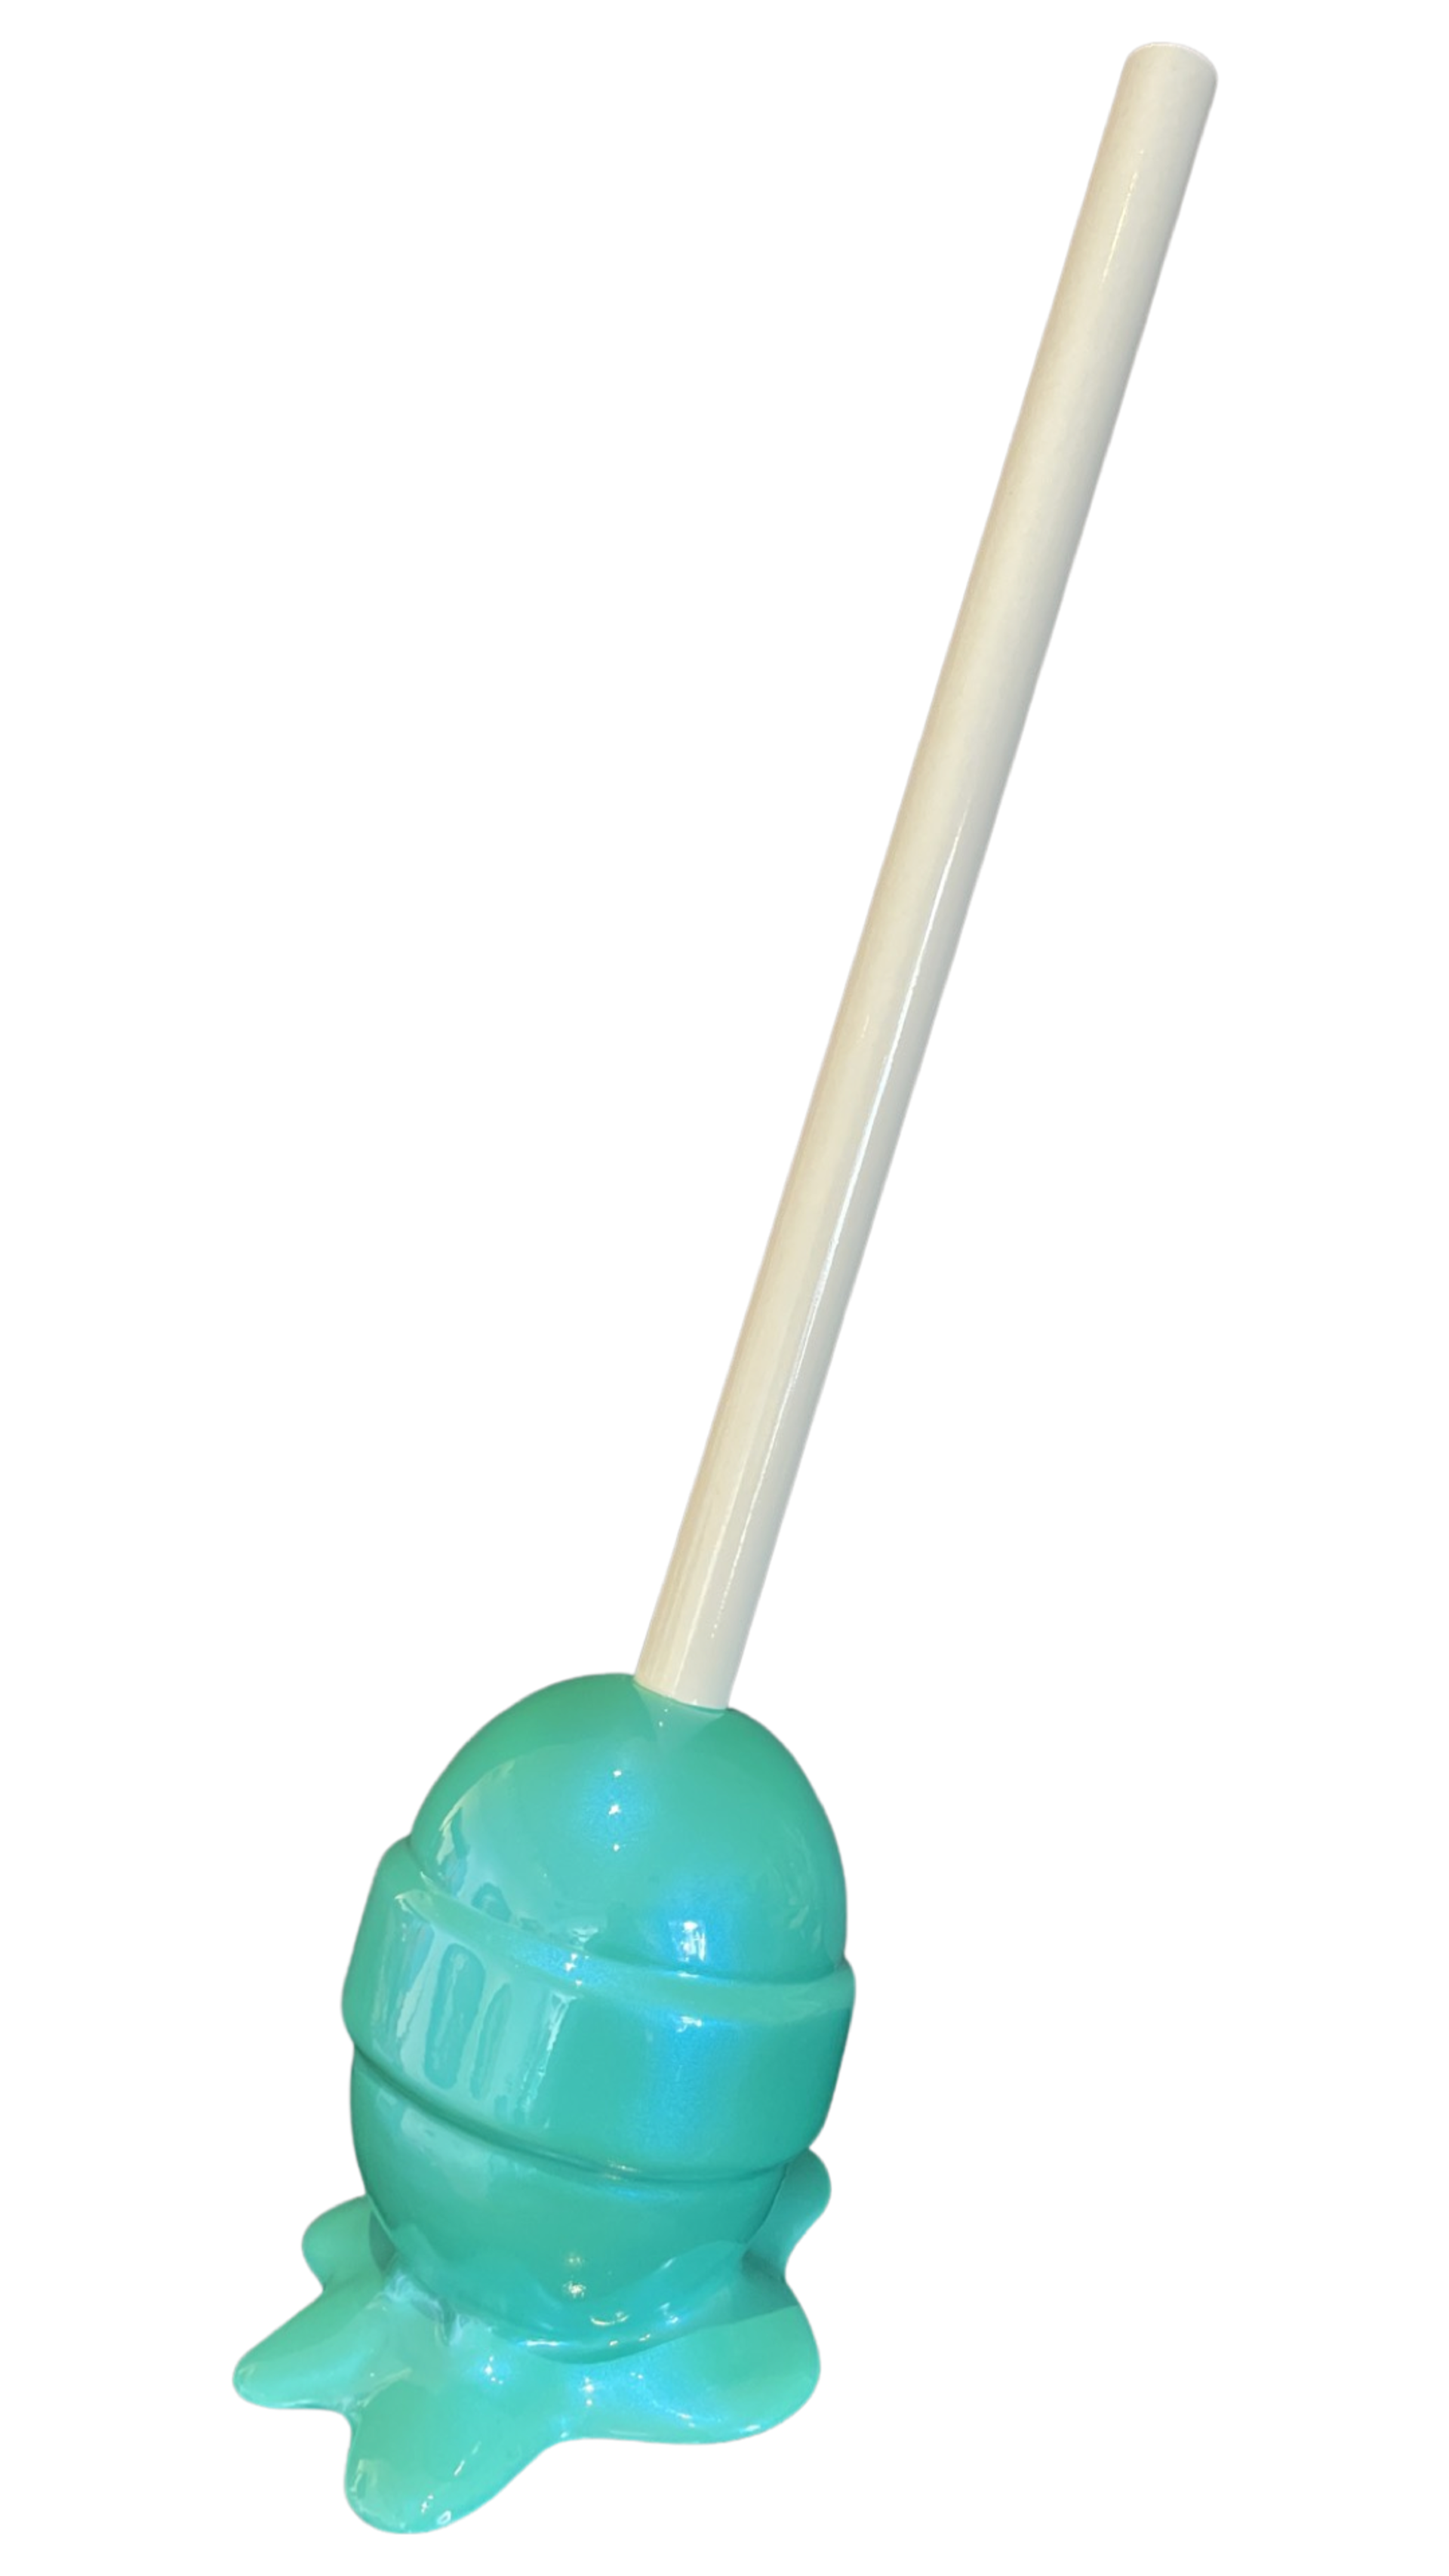 Teal Lollipop by Lollipops by Elena Bulatova